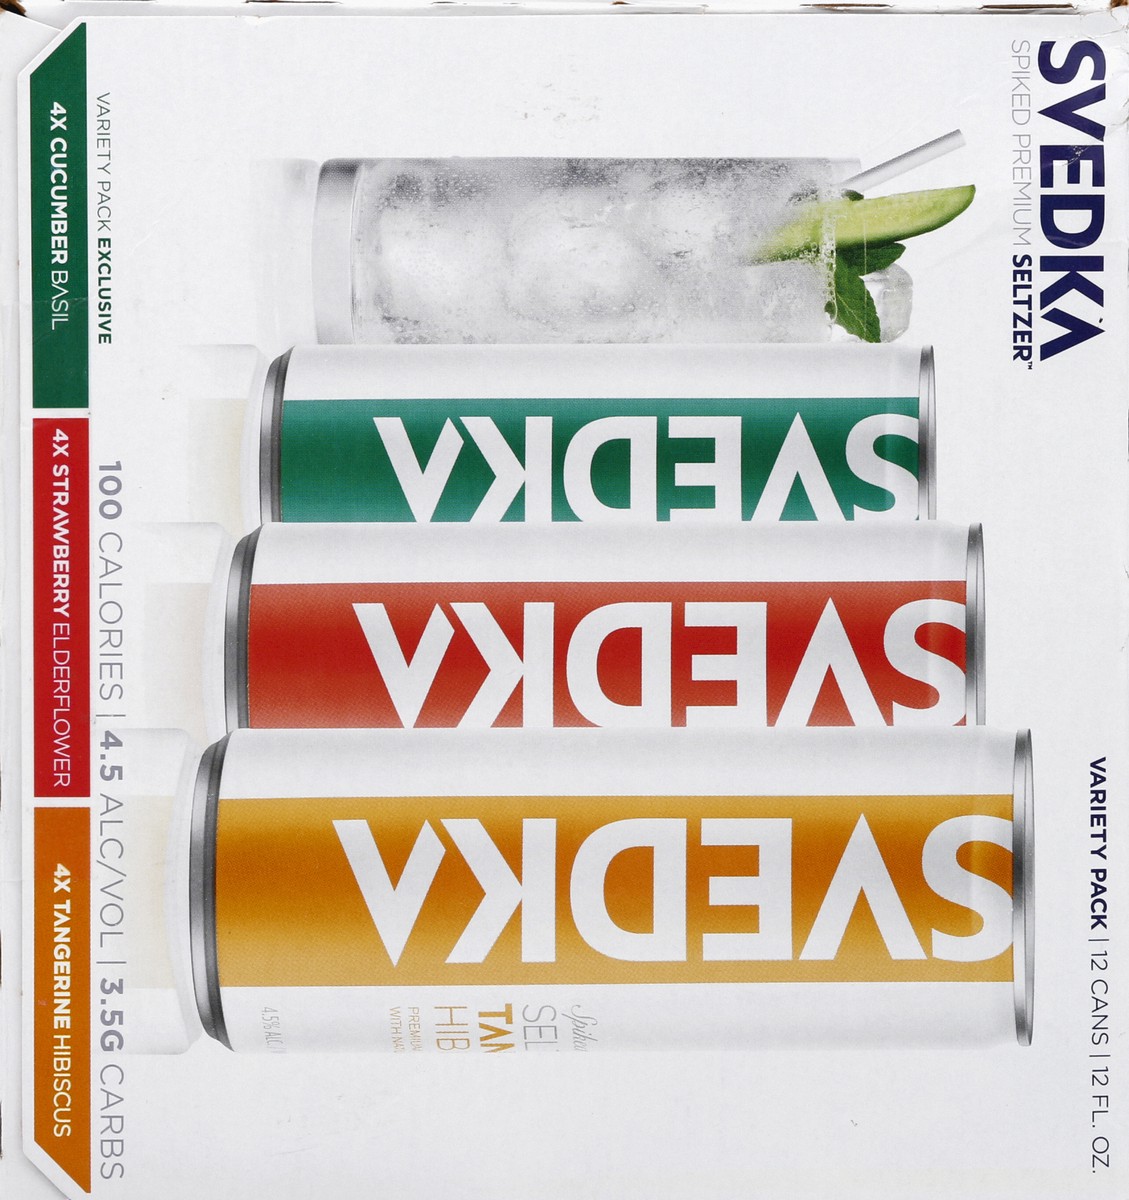 slide 3 of 6, SVEDKA Spiked Seltzer Flavored Malt Beverage, 12 ct; 12 fl oz